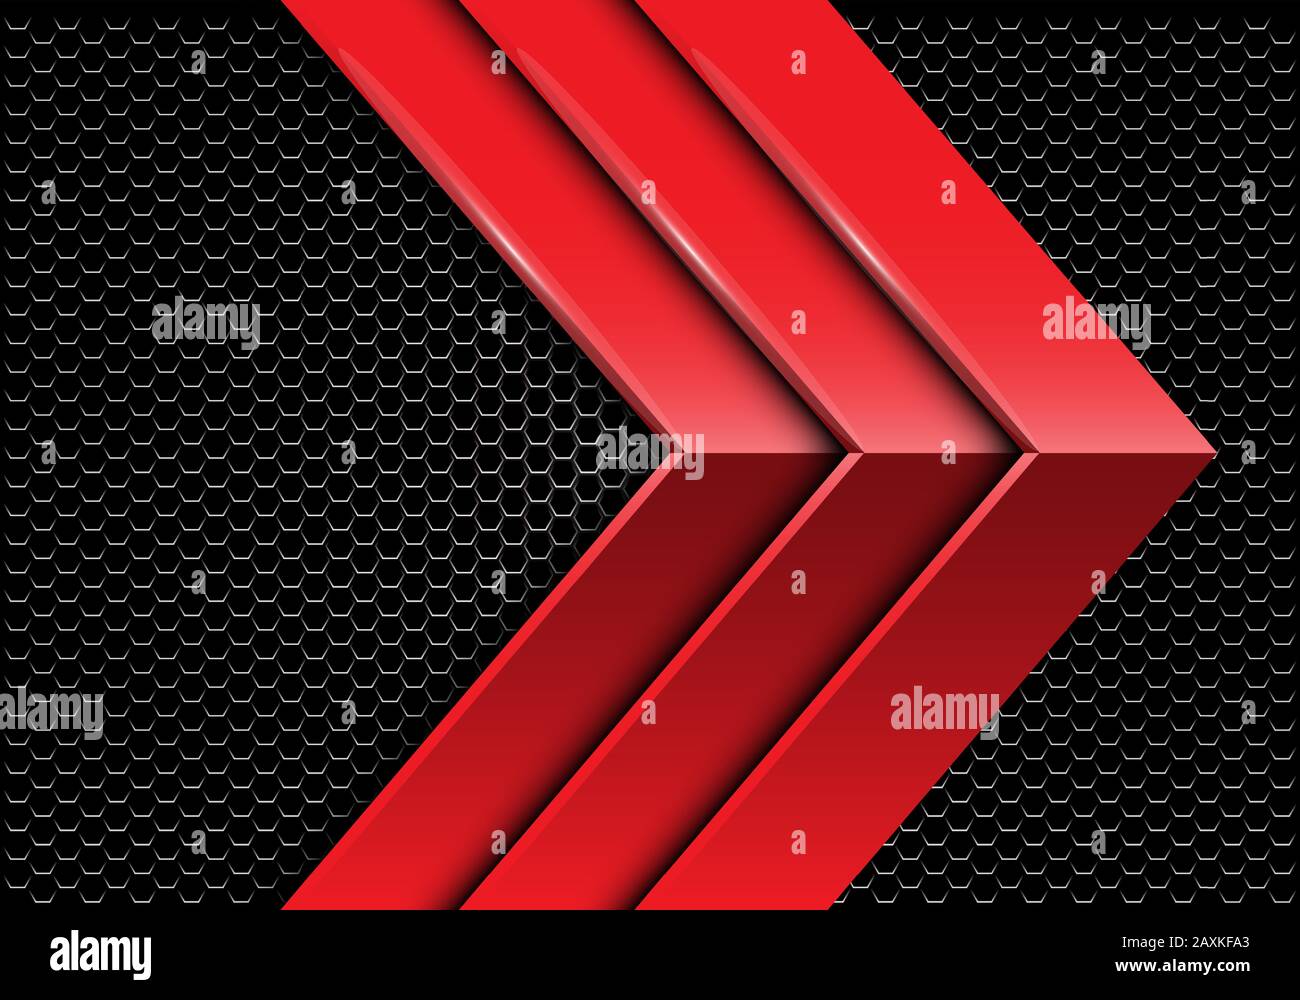 Abstrakt dreifach rot metallic Pfeil Richtung auf dunklen Hexagon Mesh-Design moderne futuristische Hintergrund Vektor-Illustration. Stock Vektor